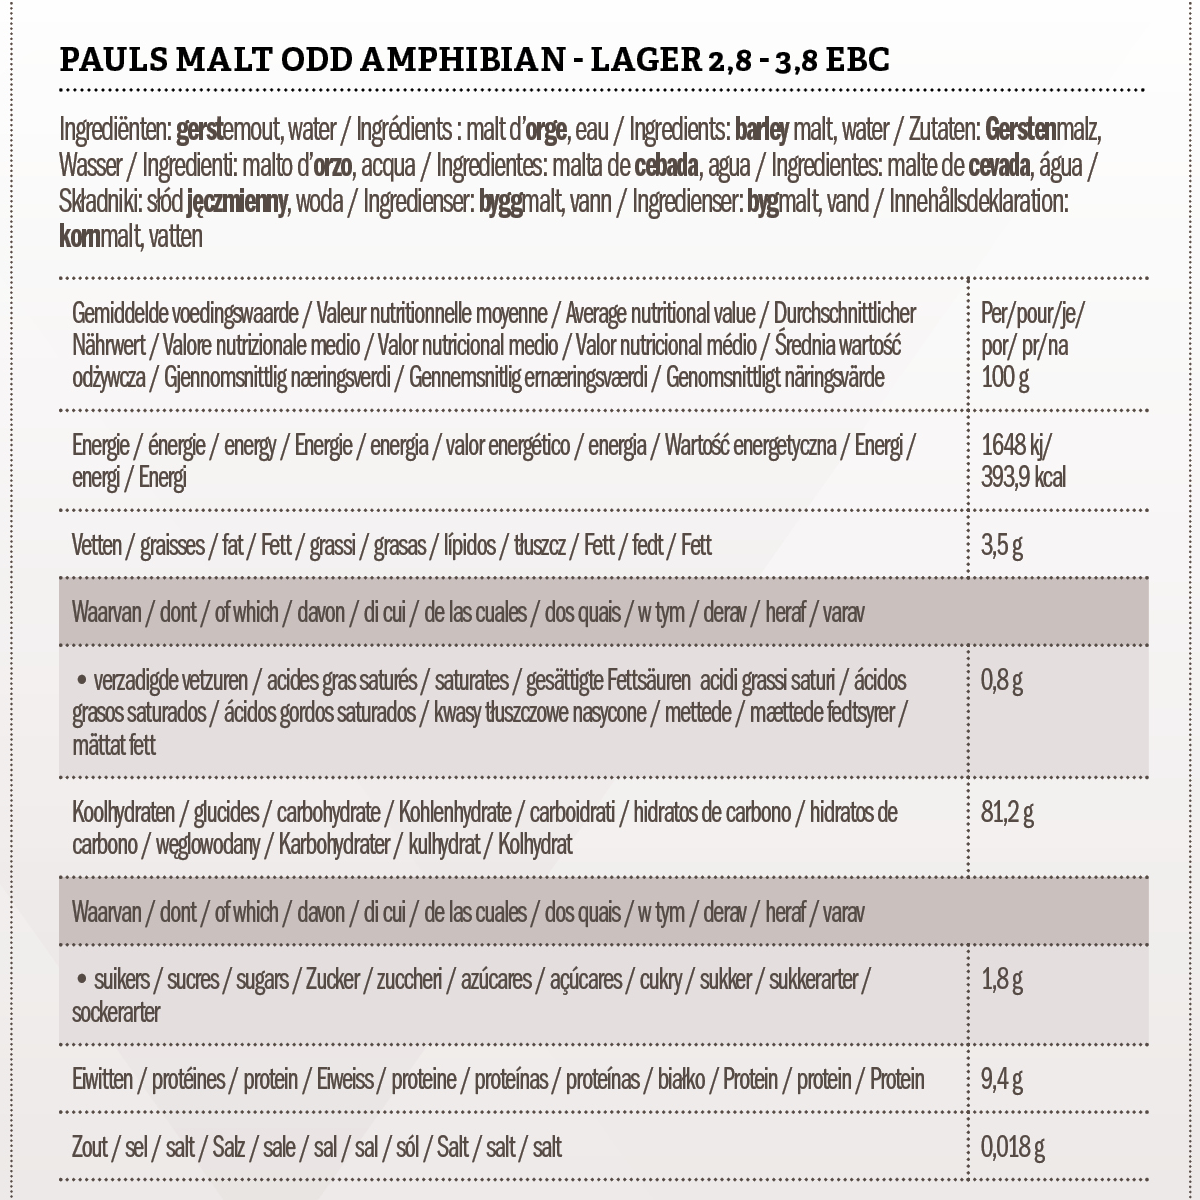 Pauls Malt Odd Amphibian - Lager 2,8 - 3,8 EBC 25 kg